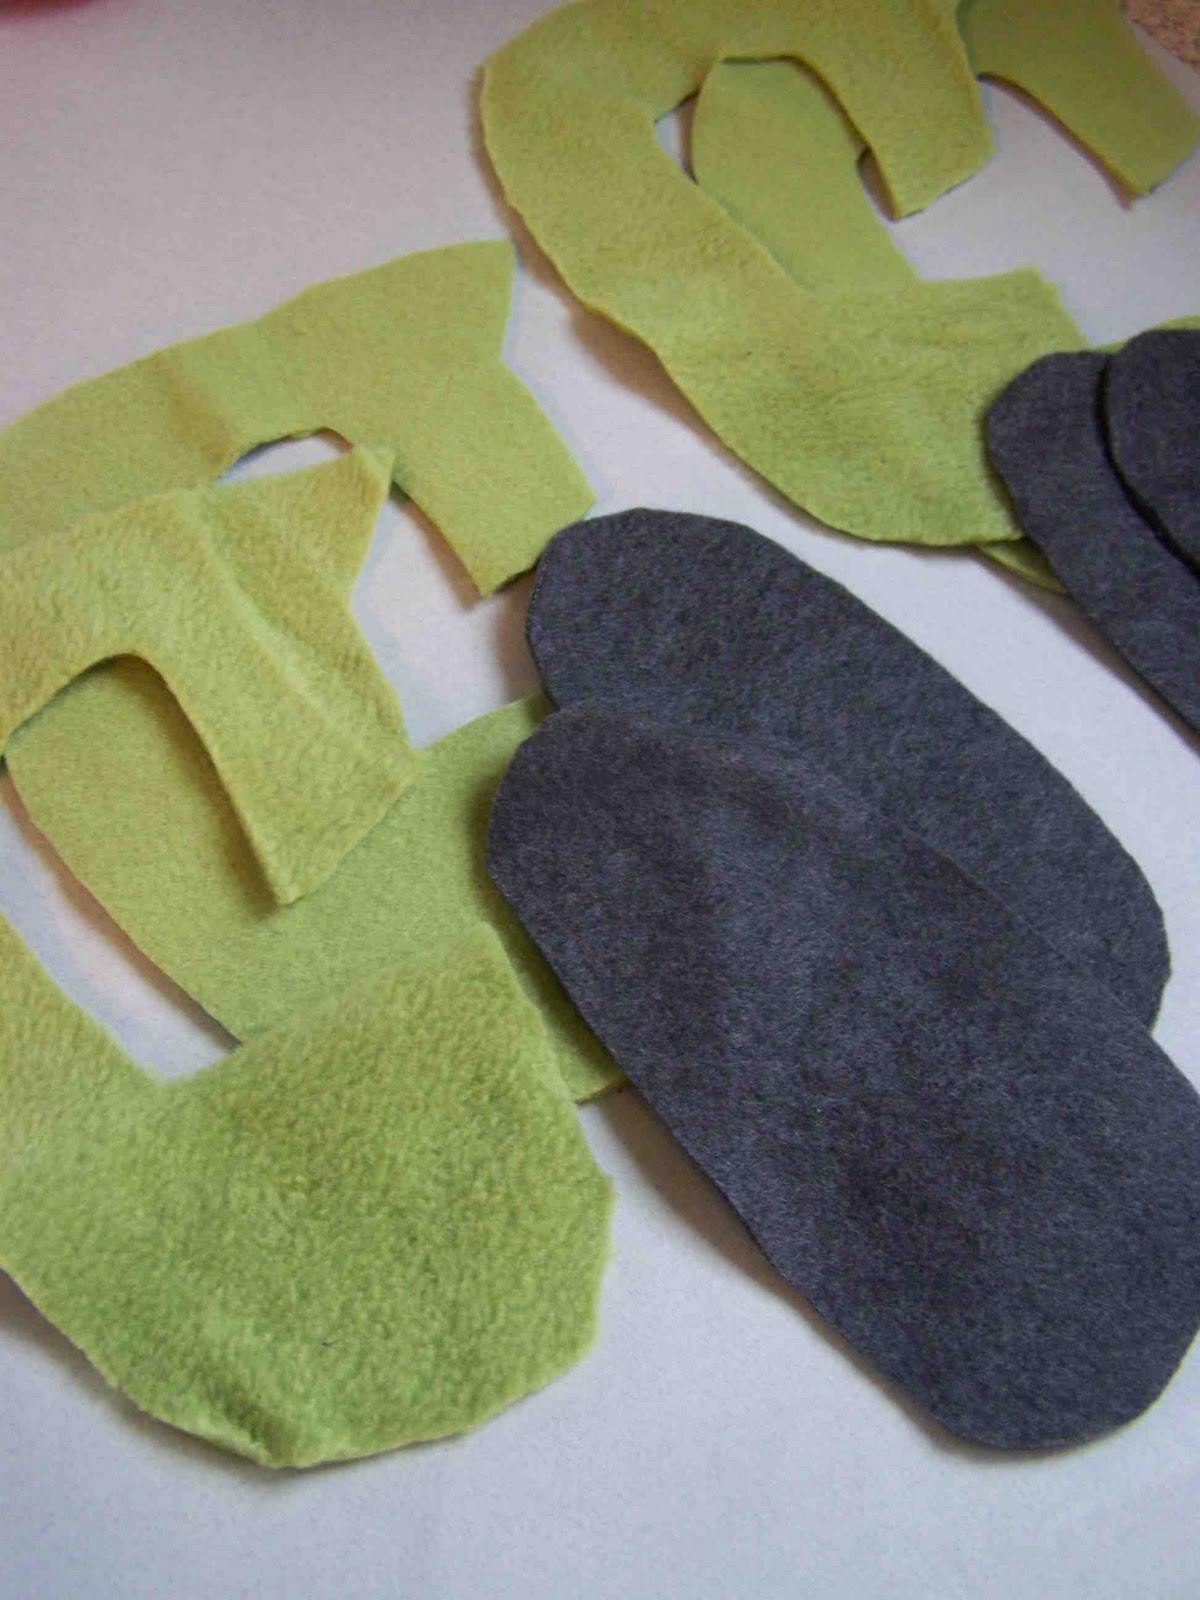 Fleece - Free Patterns for Fleece Blankets, Fleece Vests